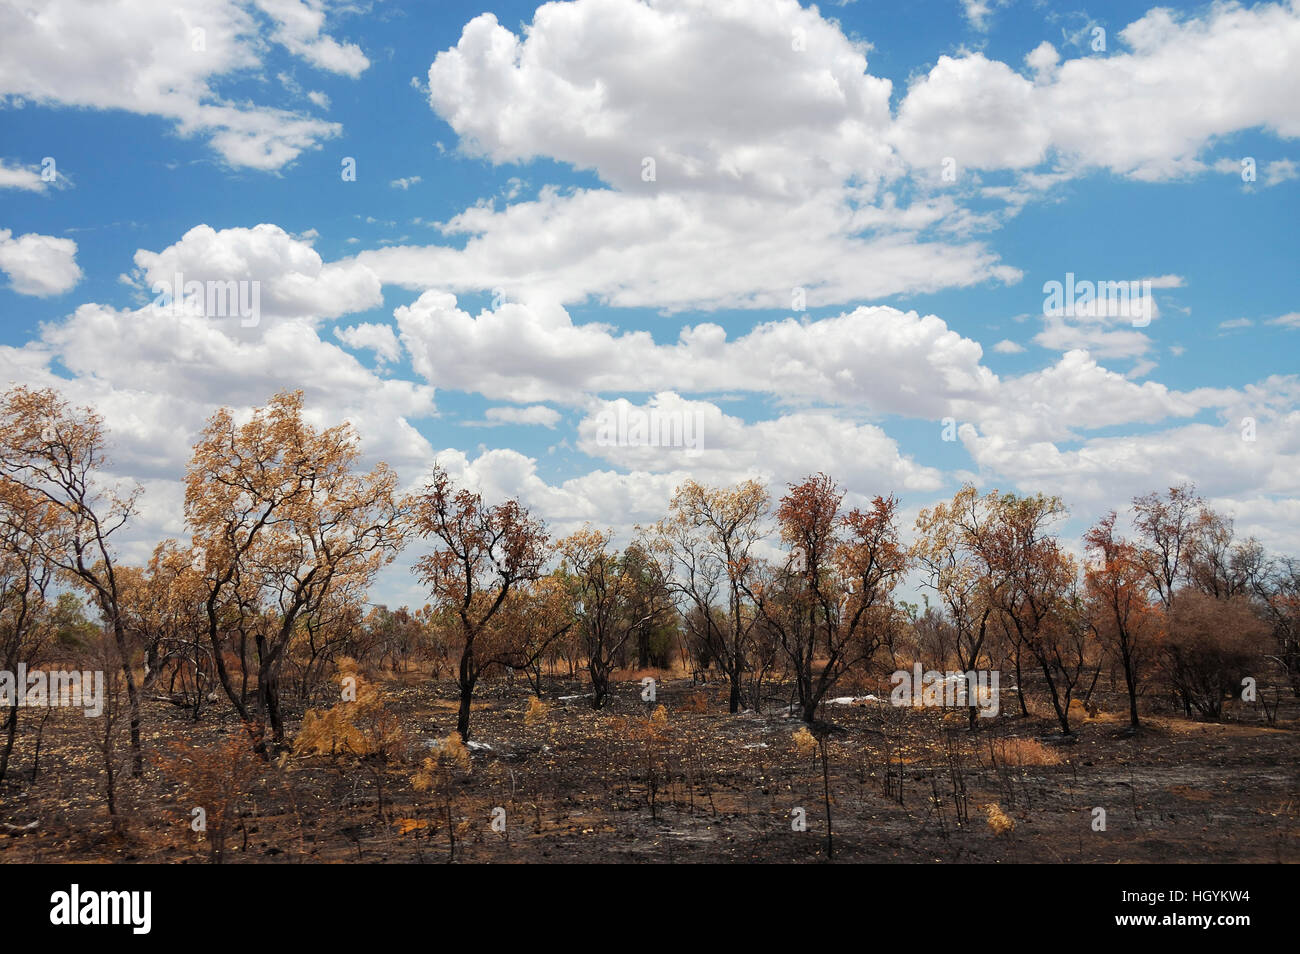 Australianas bush paisaje después de un ligero fuego de arbusto, Territorio de Nothern, Australia Foto de stock